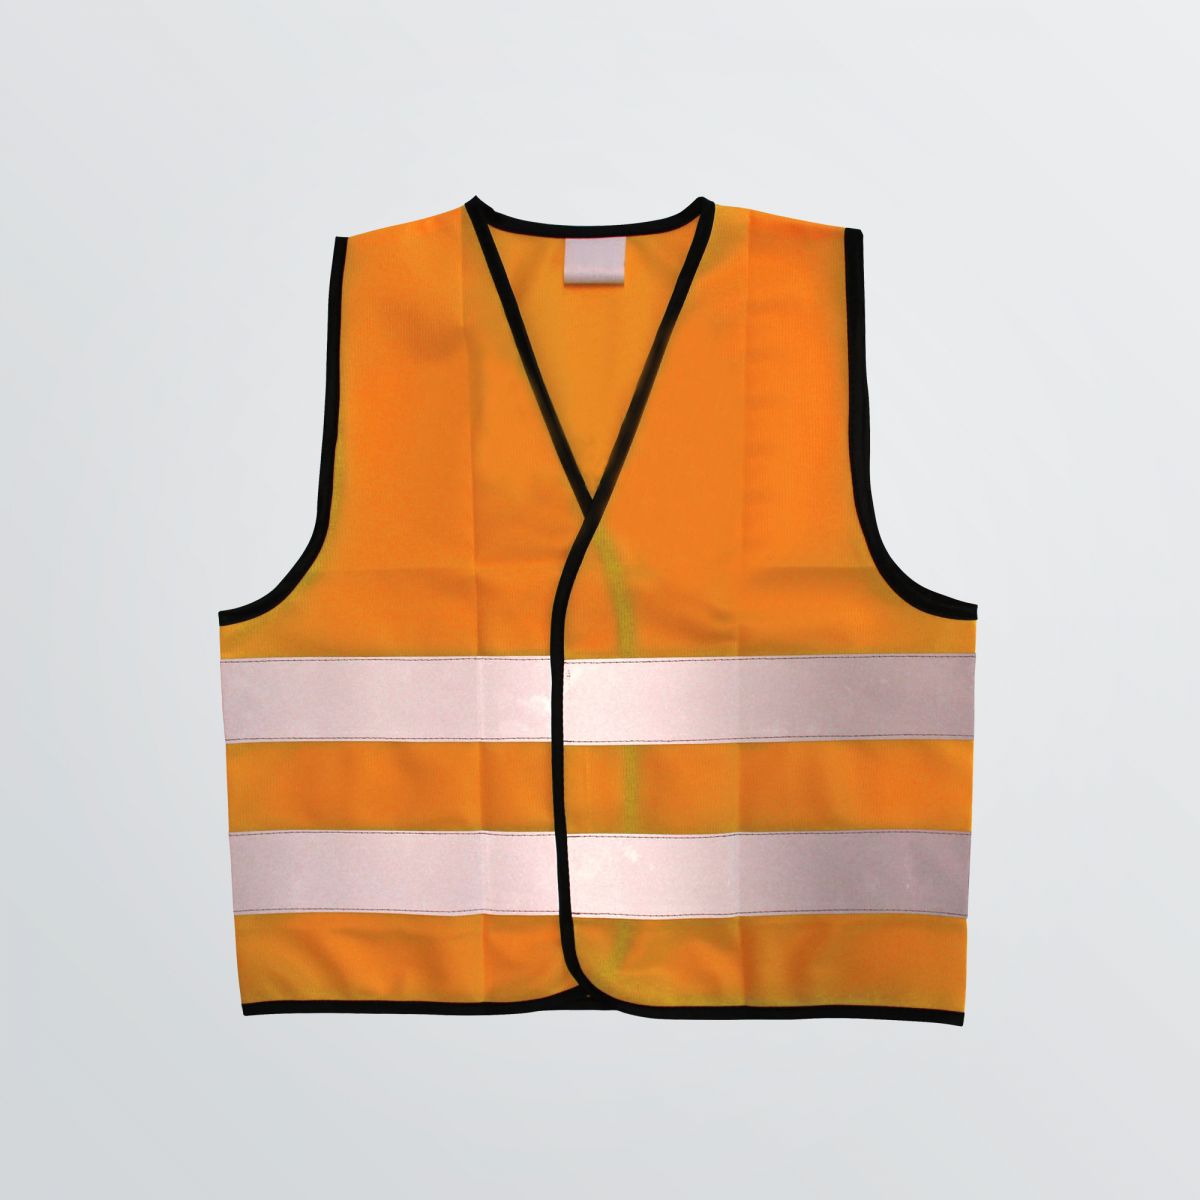 Individualisierbare Signal Vest als klassische Warnweste in Signalfarbe - Abbildung in orange mit Reflektorstreifen - Frontansicht